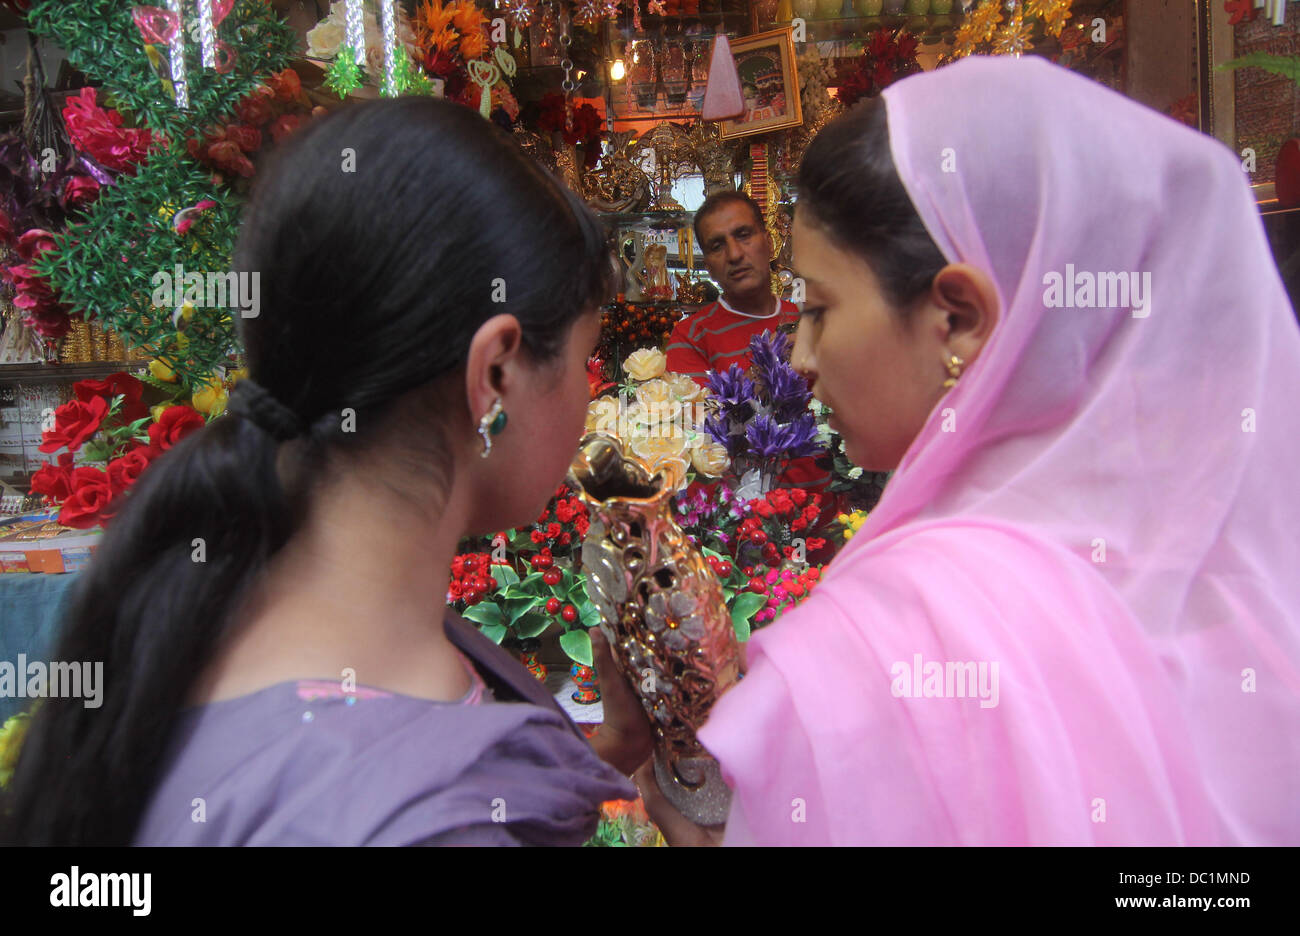 Srinagar, au Cachemire, en Inde. 7e août 2013. Les filles musulmanes du Cachemire l'achat des fleurs au marché central (Lal Chowk) comme ils font leurs achats à venir de l'Eid-ul-Fitir de Srinagar, la capitale d'été du Cachemire indien sur 08/07/2013. Des marchés à travers le monde musulman témoin énorme centre d'urgence dans les derniers jours du Ramadan pour l'Eid-ul-Fitir (Aïd al-Fitr, Eid al Fitr) qui marque la fin du Ramadan. Les célébrations dépendent de l'apparition de Crescent comme calendrier musulman est un calendrier lunaire dans la nature. Comme un cadeau aux sections locales sur l'Eid festival © Altaf Zargar/ZUMAPRESS.com/Alamy Live News Banque D'Images